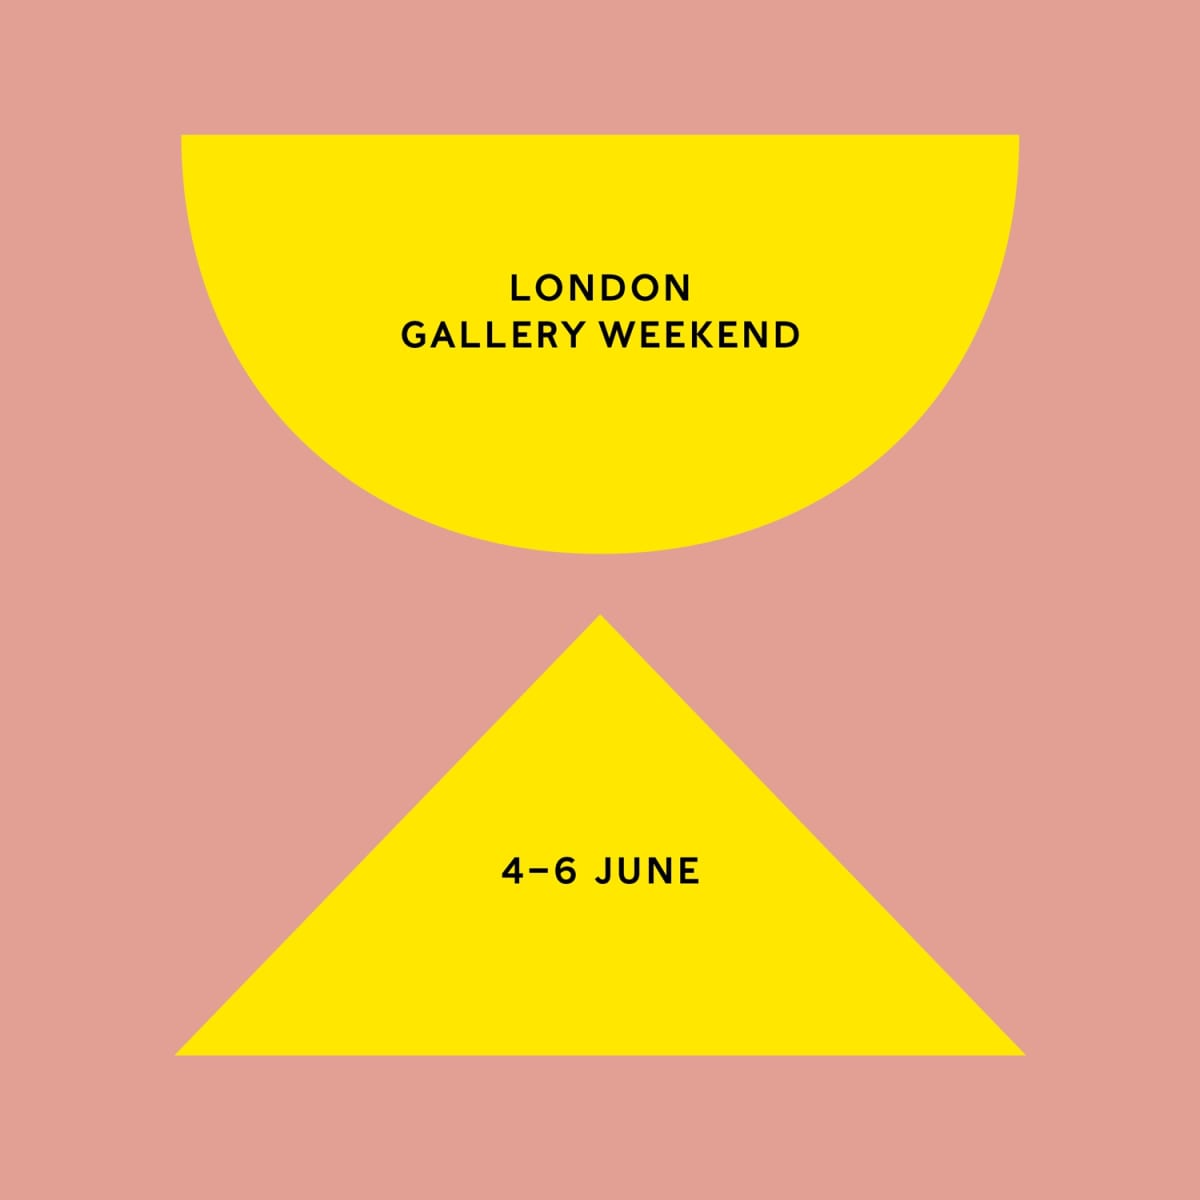 London Gallery Weekend